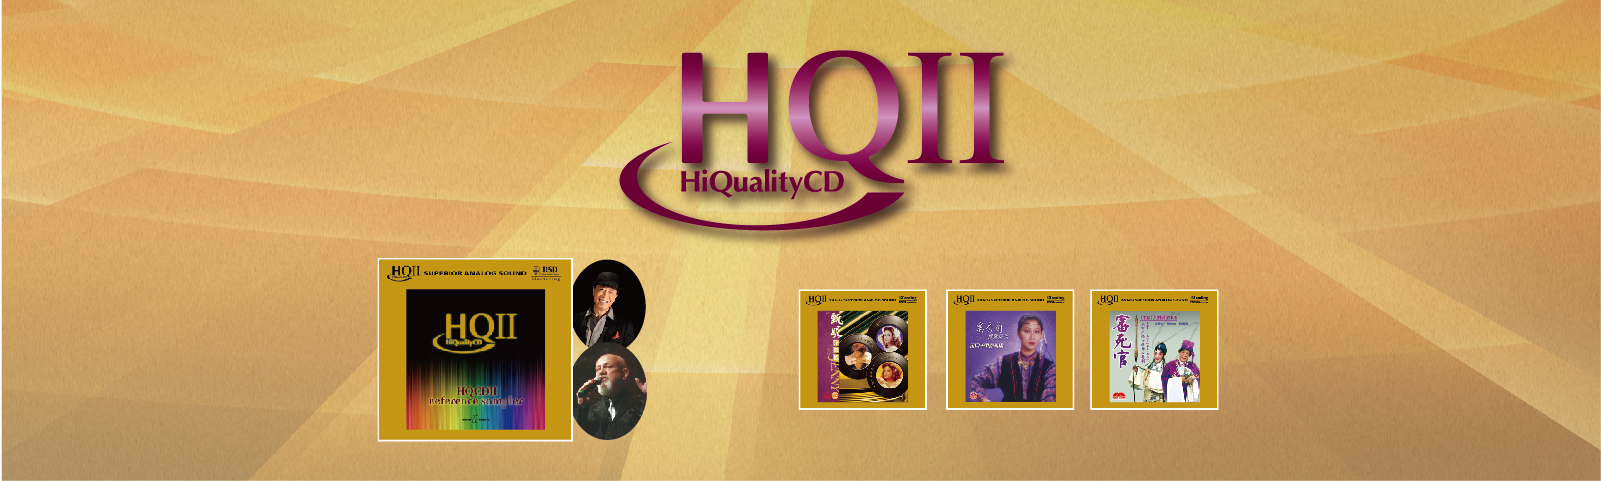 Hi Quality CD II (HQCDII)